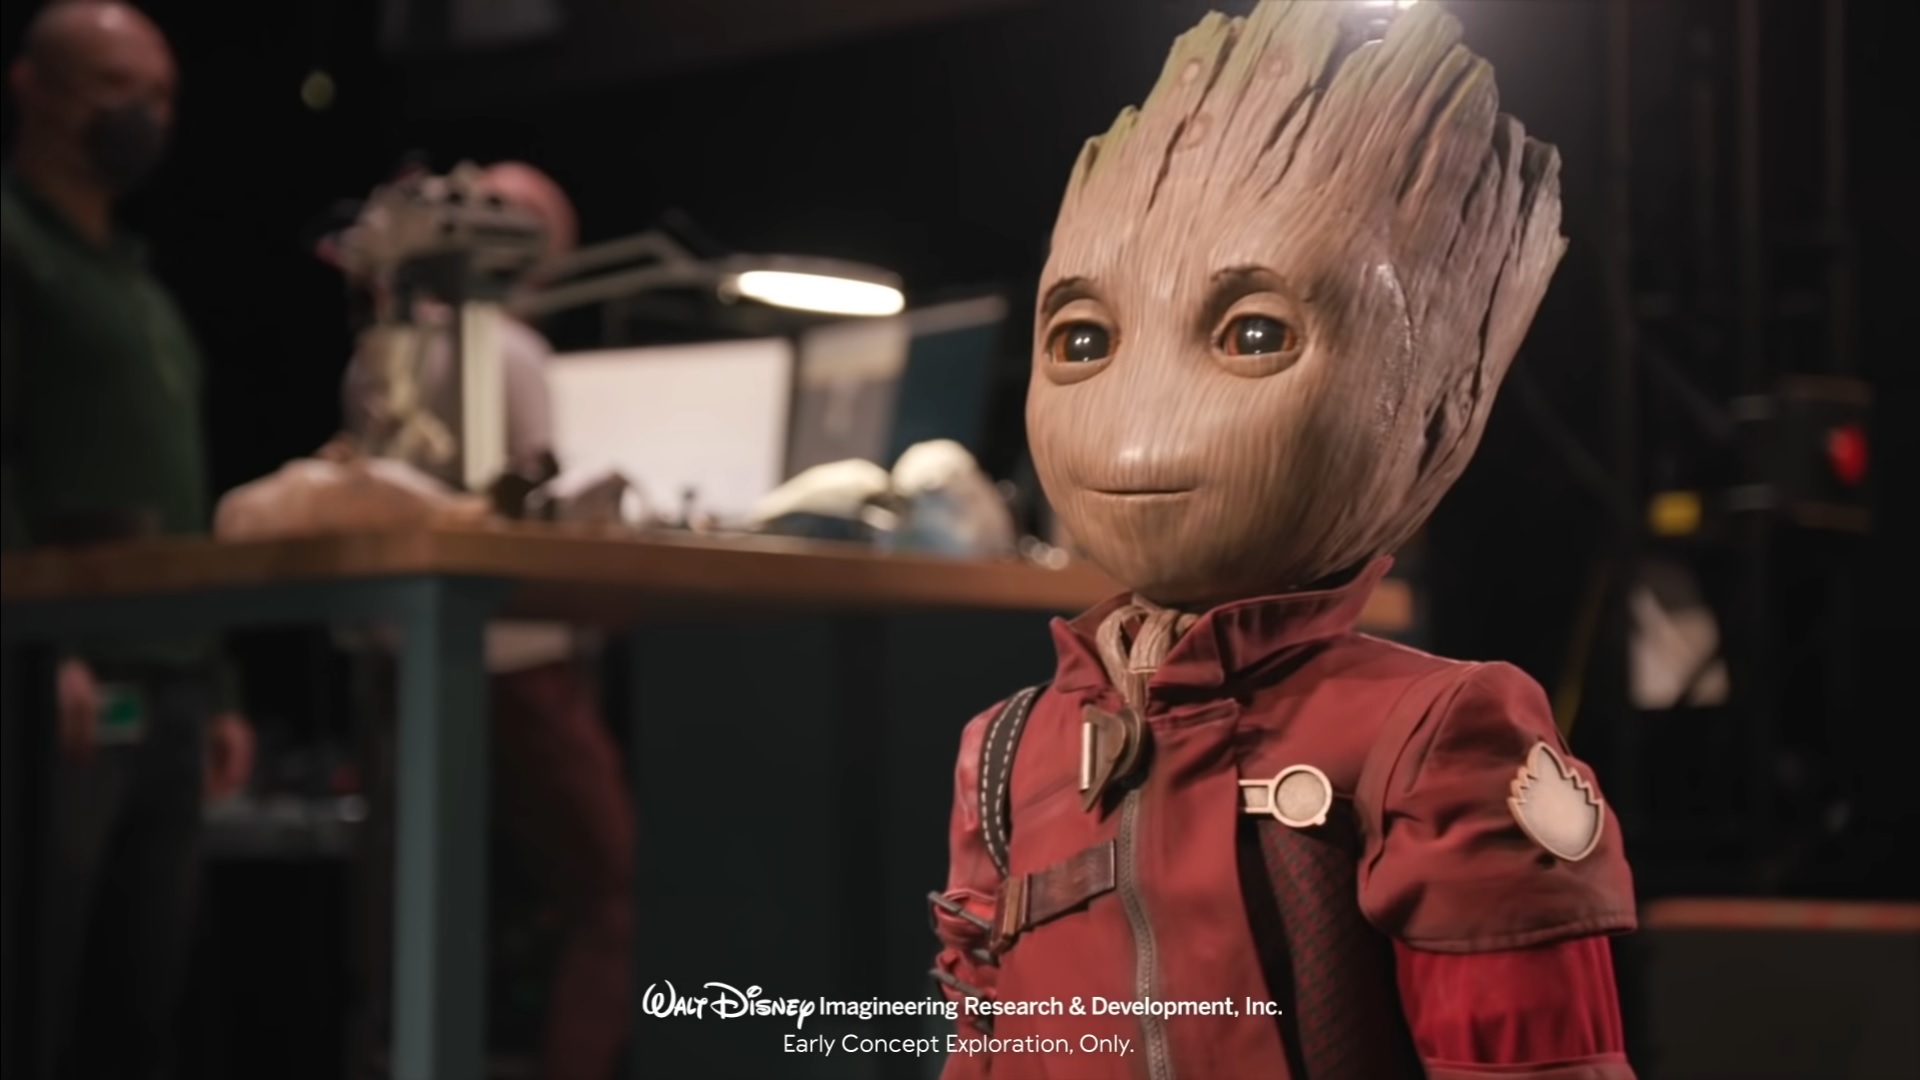 Disney donne vie à Groot dans un projet de robotique à destination de ses parcs d'attraction